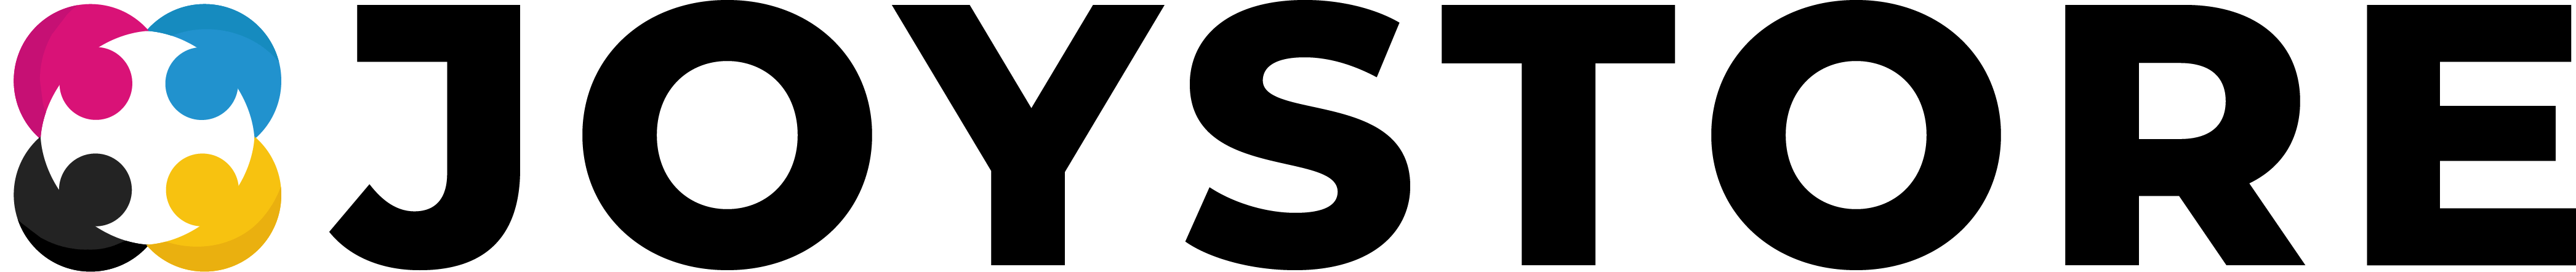 Logo joystore.pl